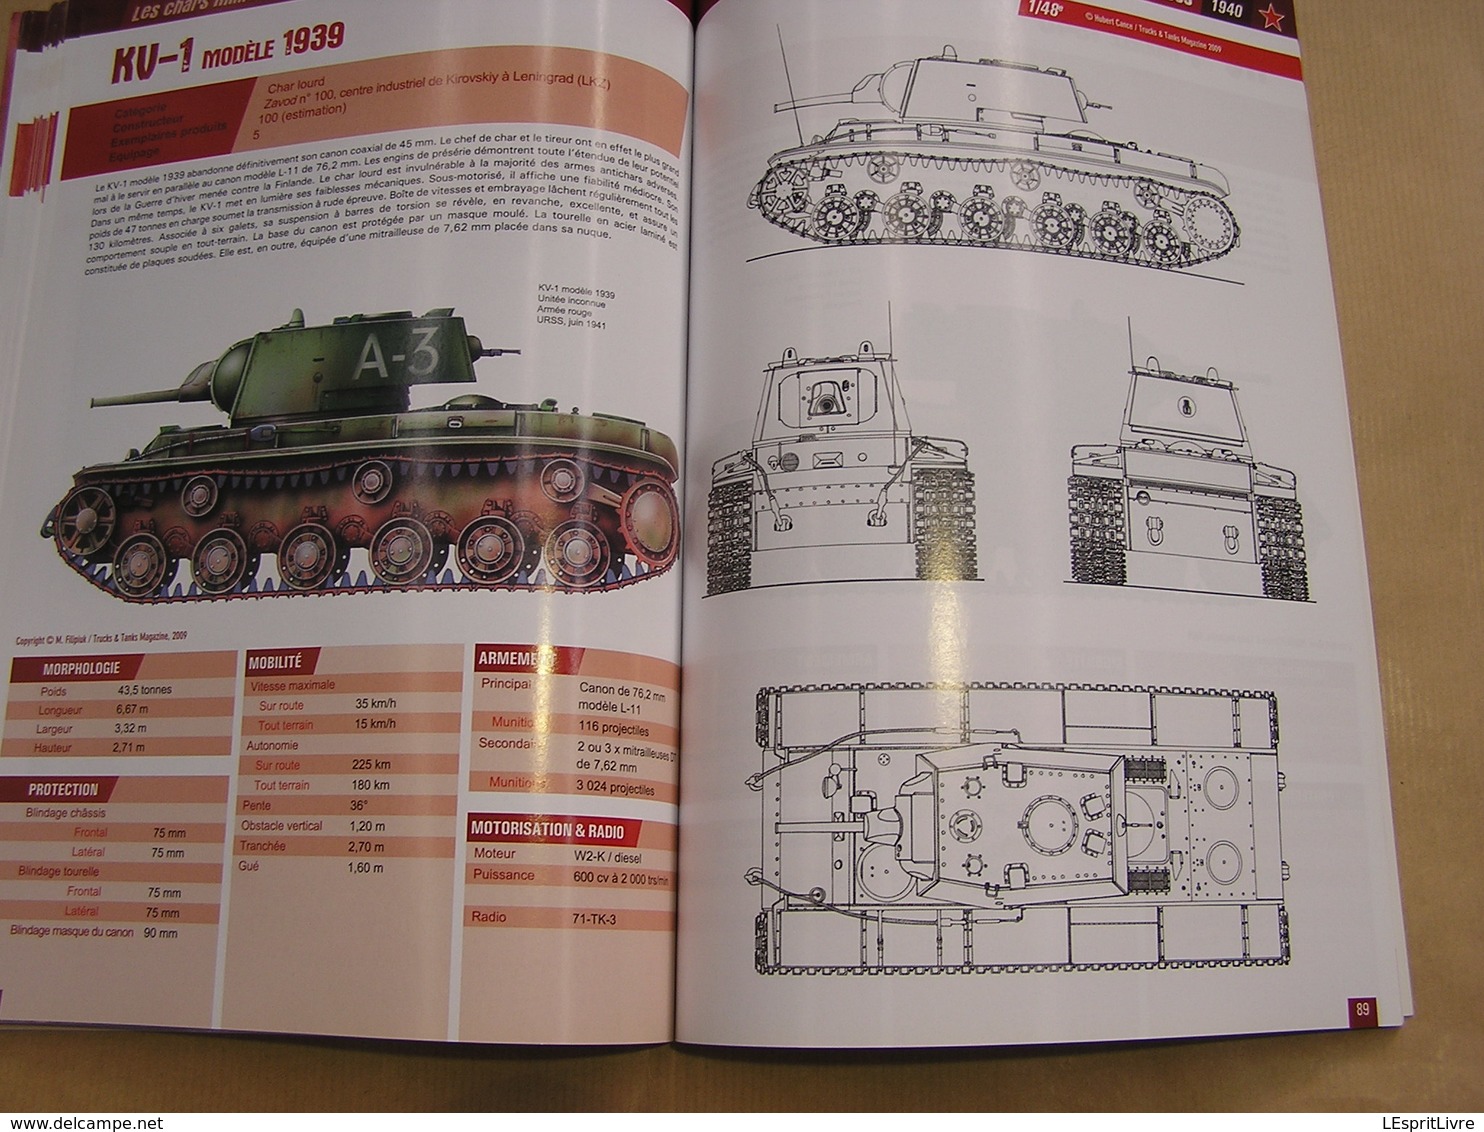 TNT Trucks & Tanks Magazine HS N° 3 Guerre 40 45 Militaria Armée Rouge Chars de Combat Soviétique T 34 KV JS T37 T 60